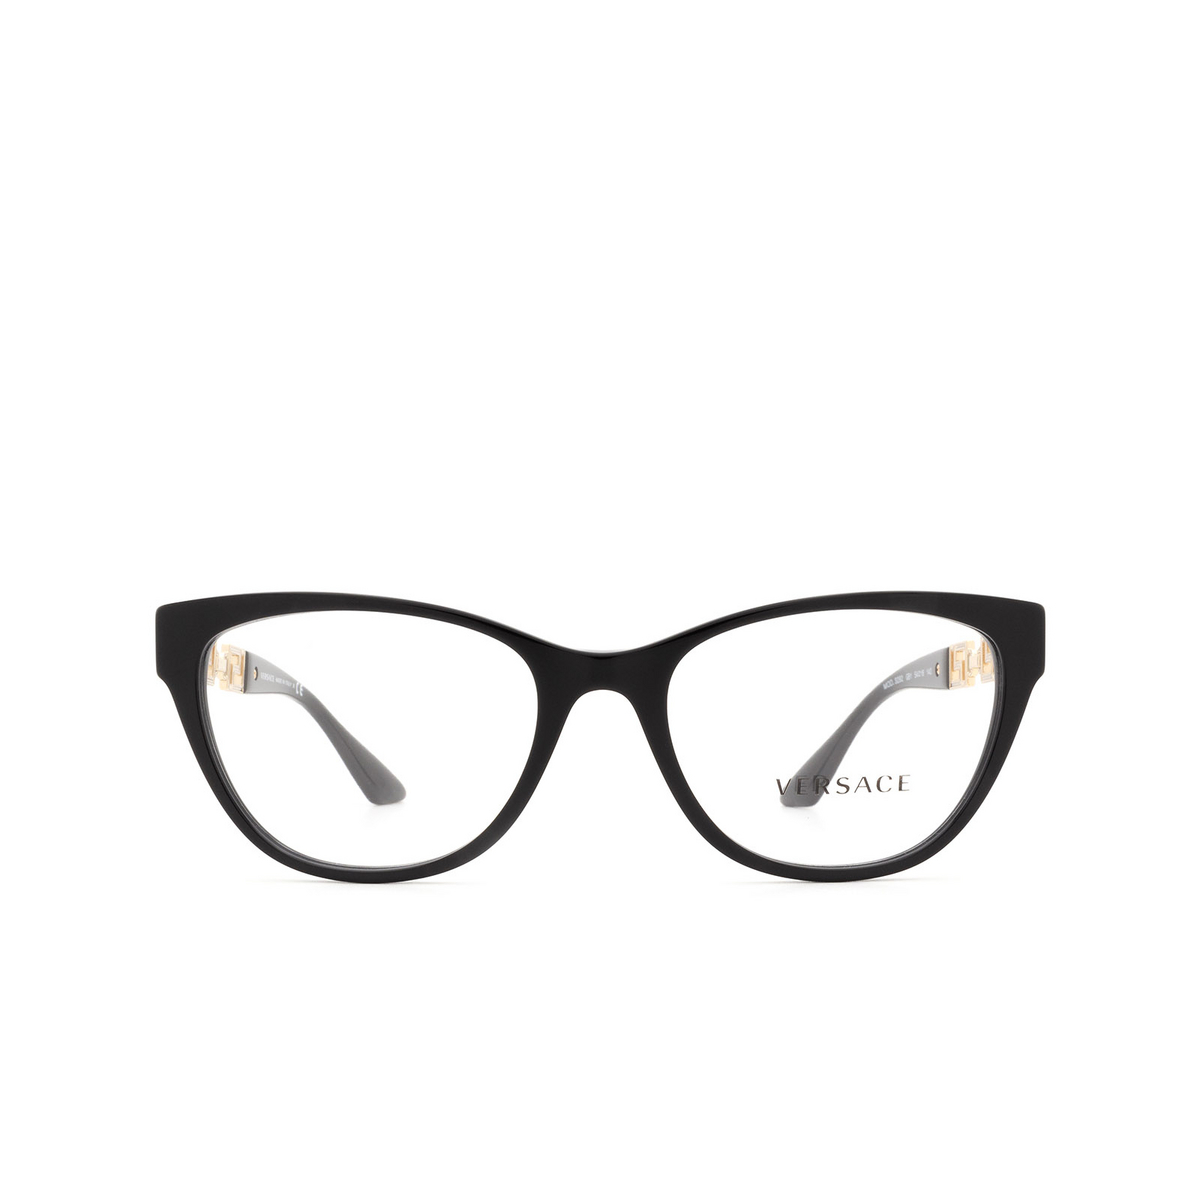 Versace VE3292 Eyeglasses GB1 Black - front view